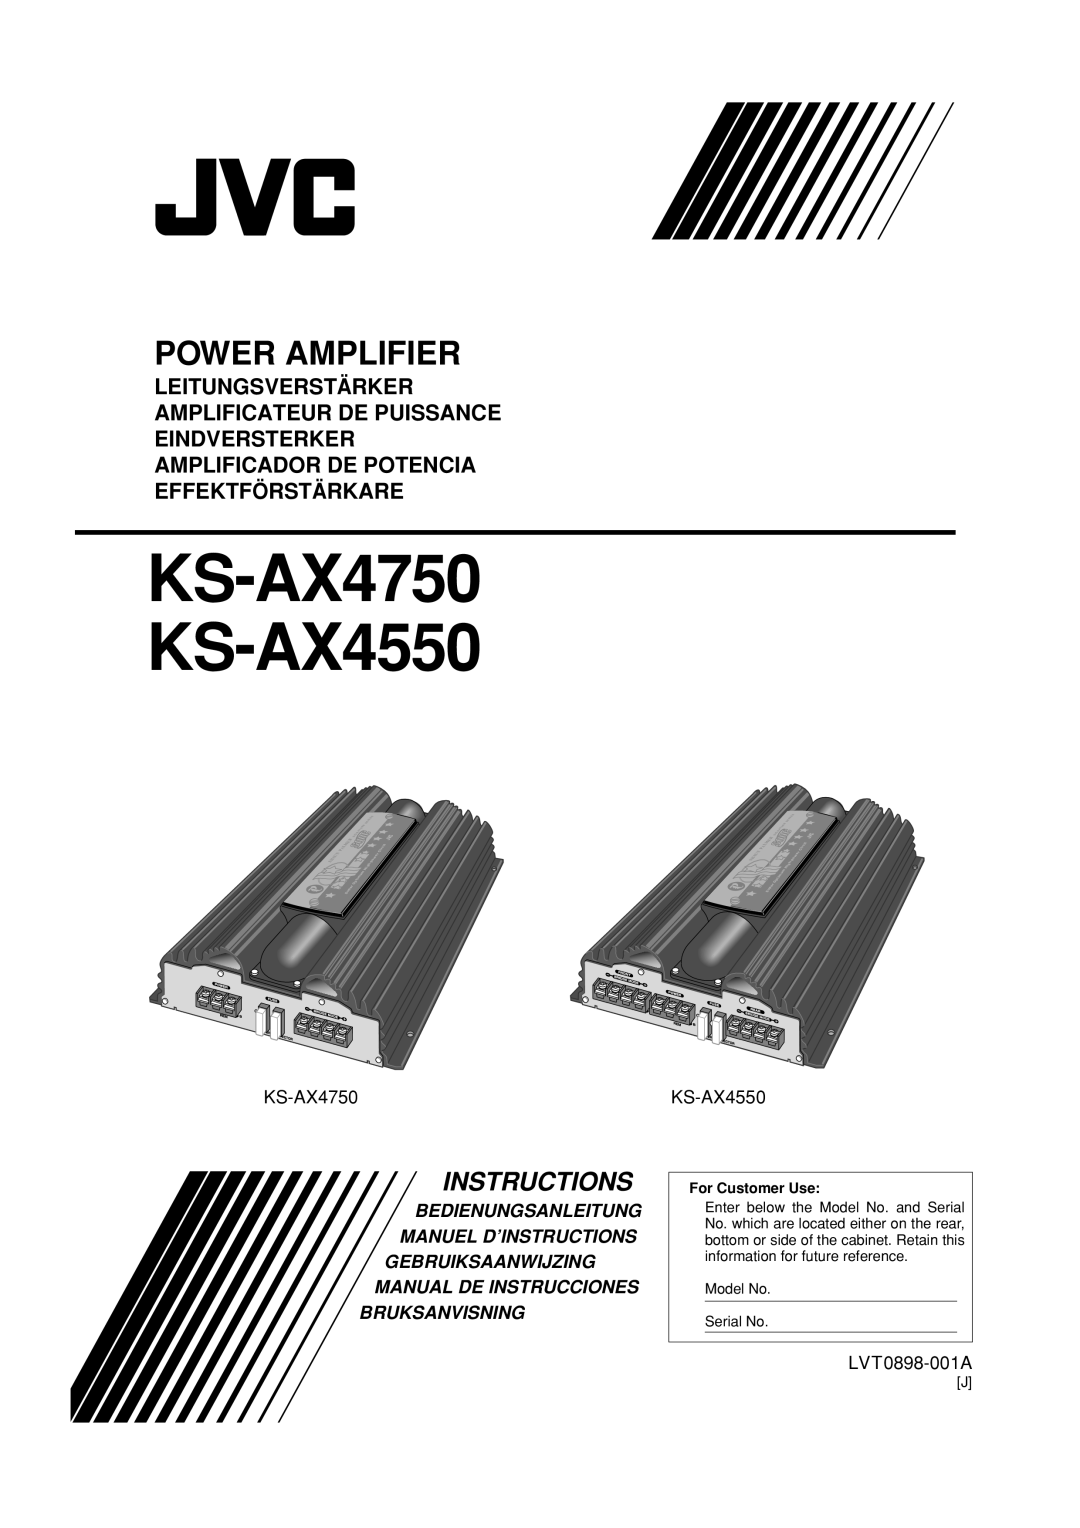 JVC manual LVT0898-001A, KS-AX4750 KS-AX4550, Power Amplifier, Instructions, Bruksanvisning, Shaun, Palmer, Super 